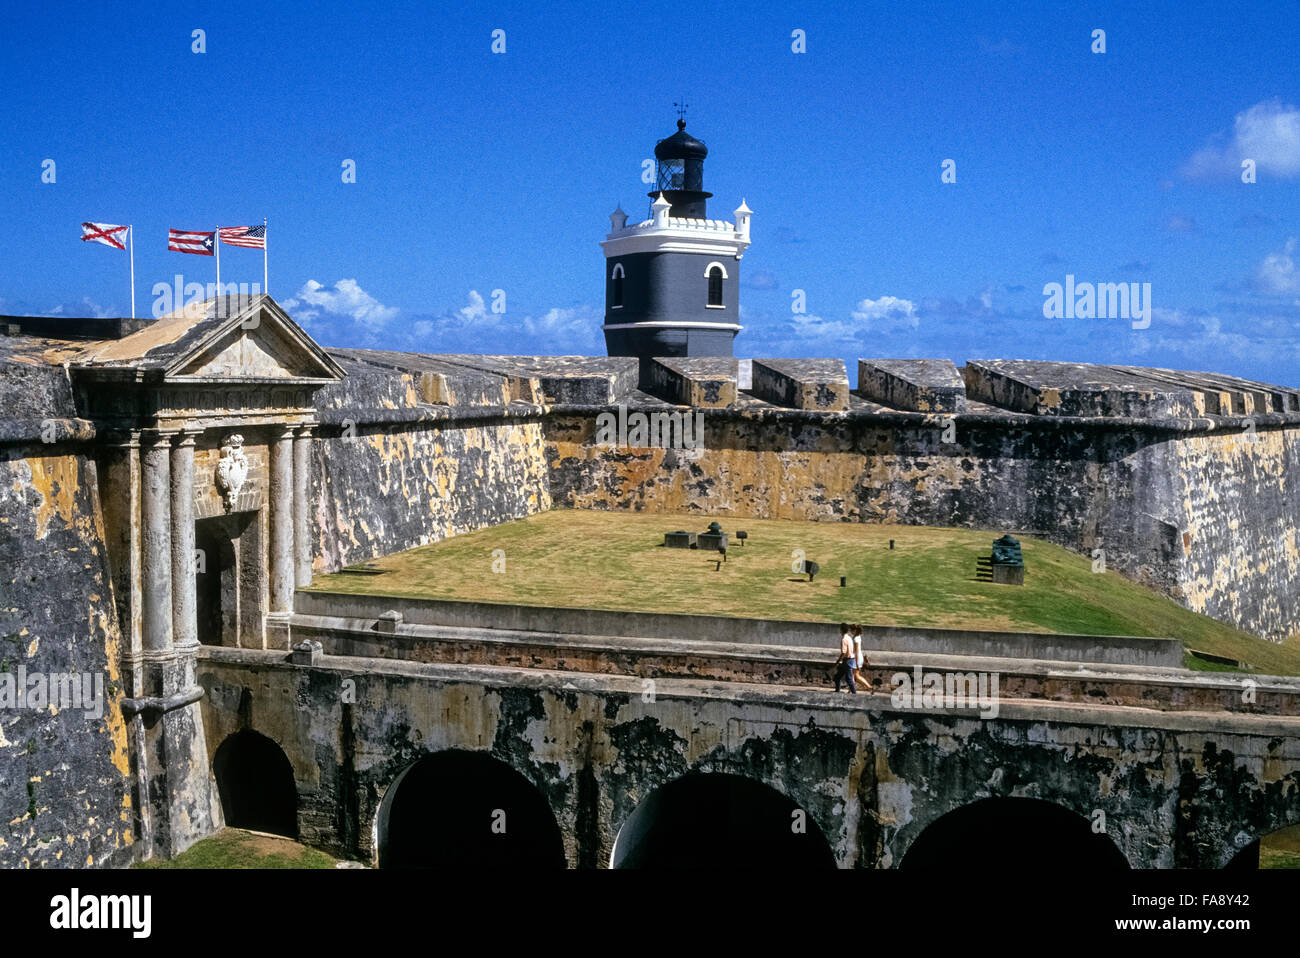 Die Festung Castillo de San Felipe del Morro entstand, während des 16. Jahrhunderts maritime Eindringlinge zu halten weg von der spanischen kolonialen Port von Old San Juan auf der karibischen Insel Puerto Rico, das ist jetzt ein Territorium der USA. Morro Castle wurde als eine nationale historische Site und ist eine große Attraktion für die Besucher nach San Juan, der Hauptstadt. Stockfoto